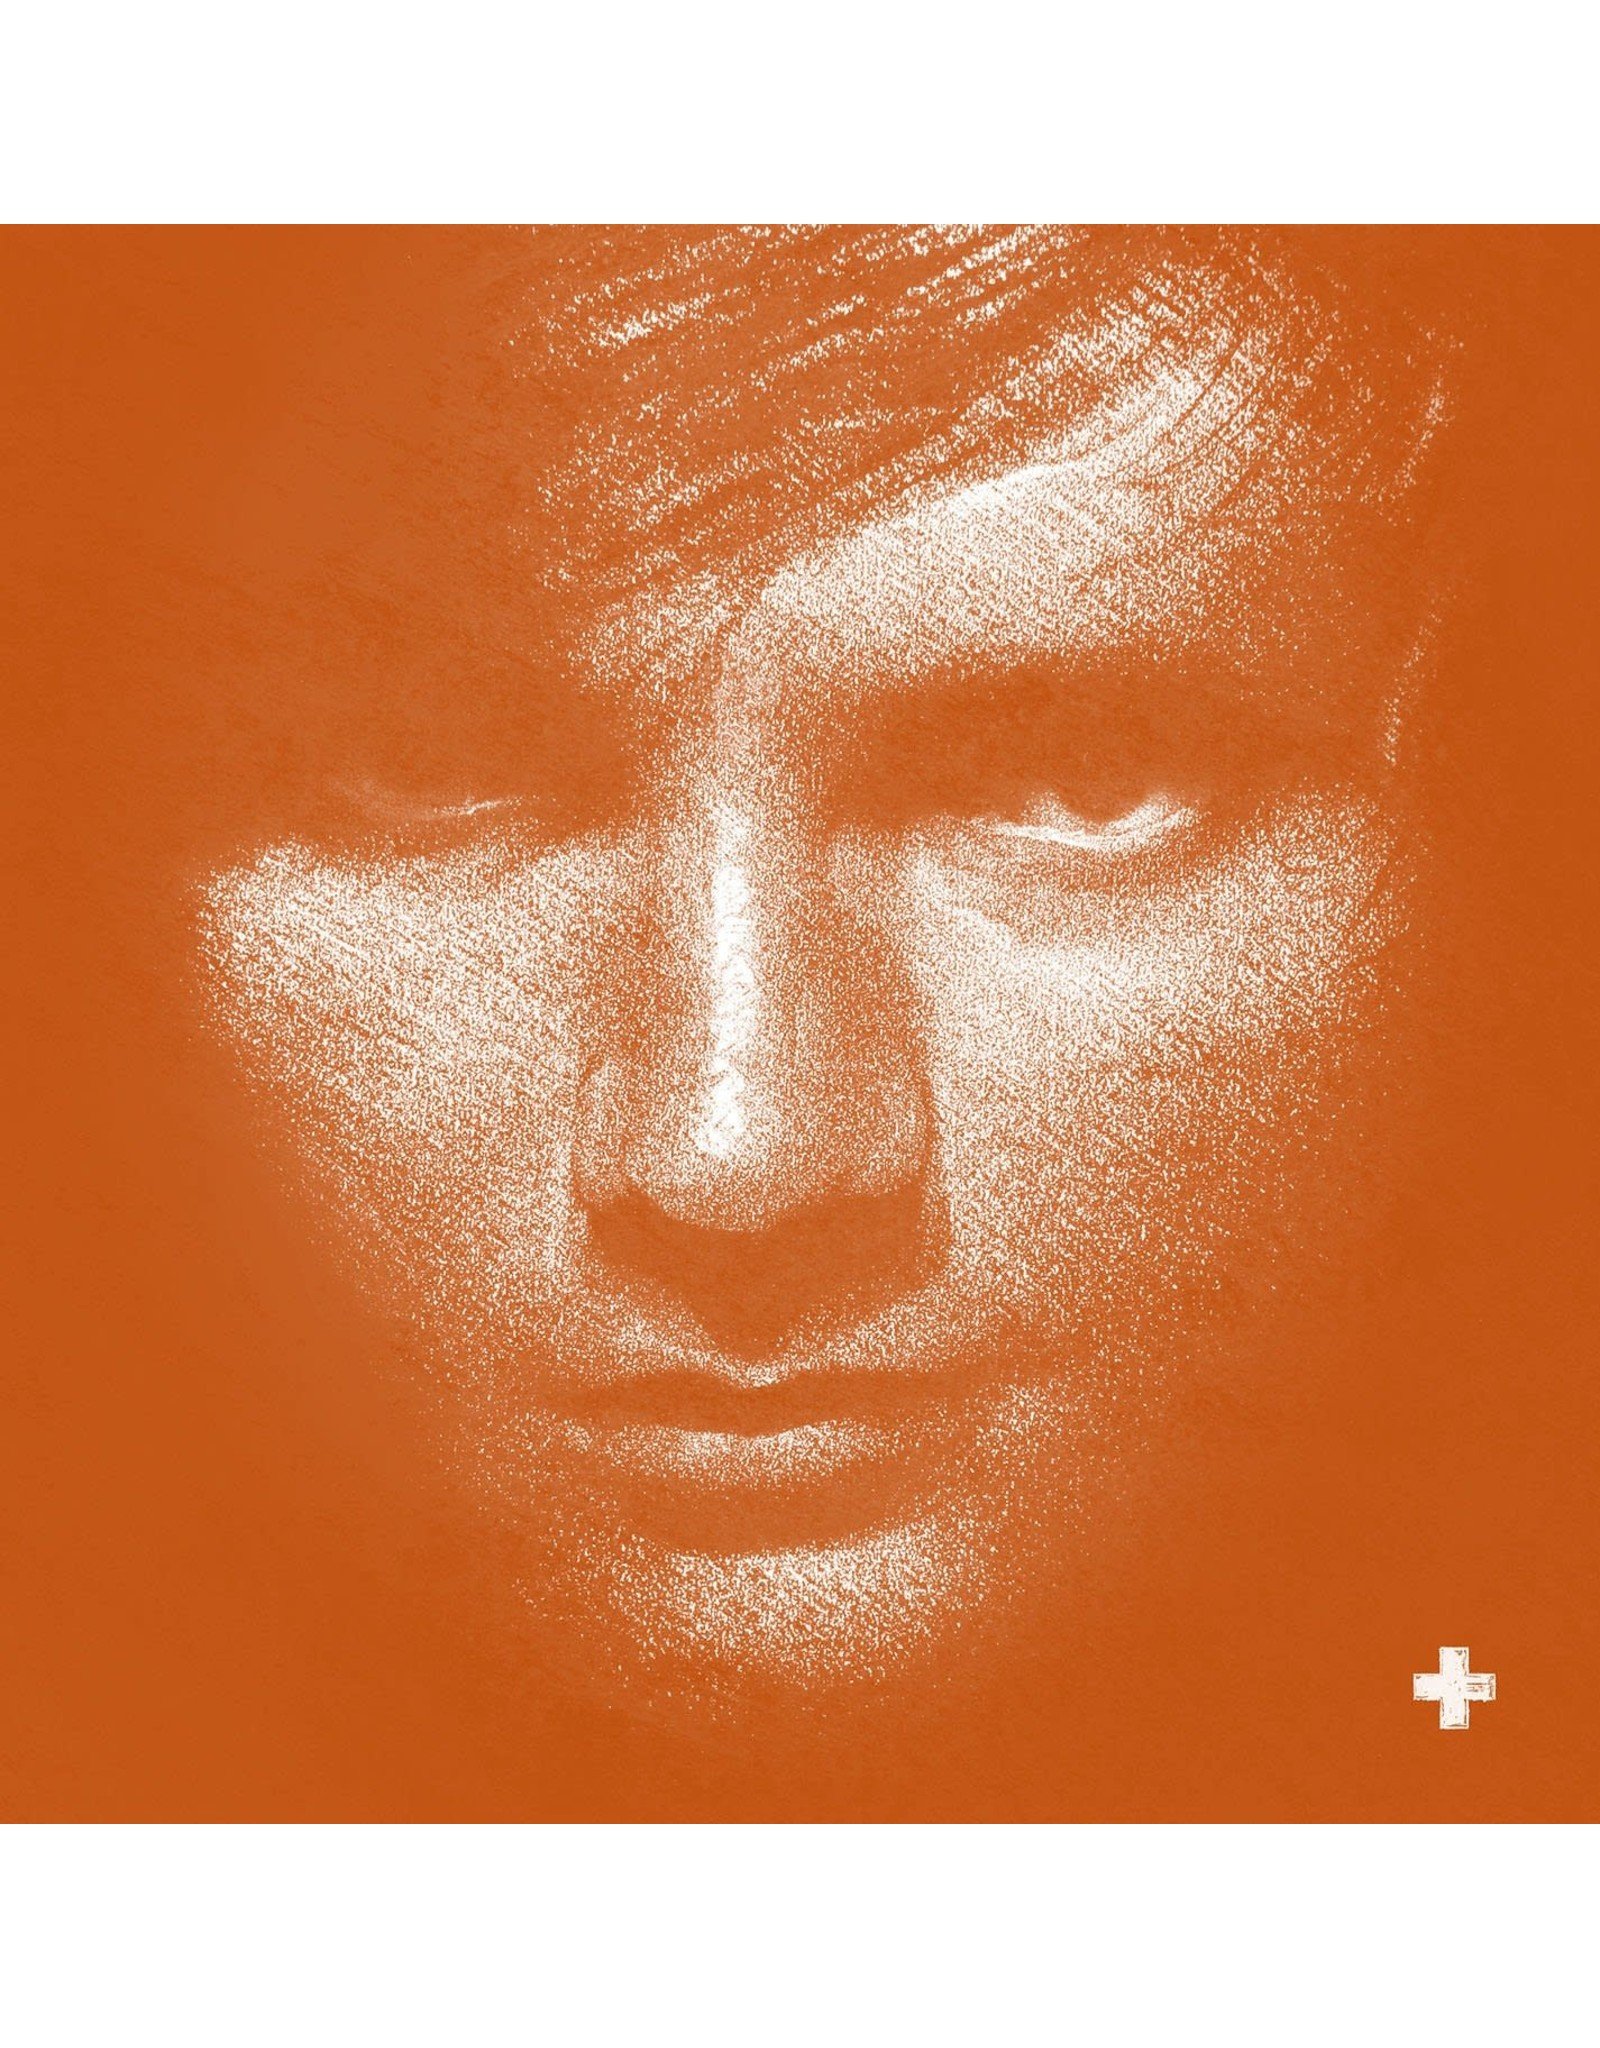 Ed Sheeran - + (Plus)